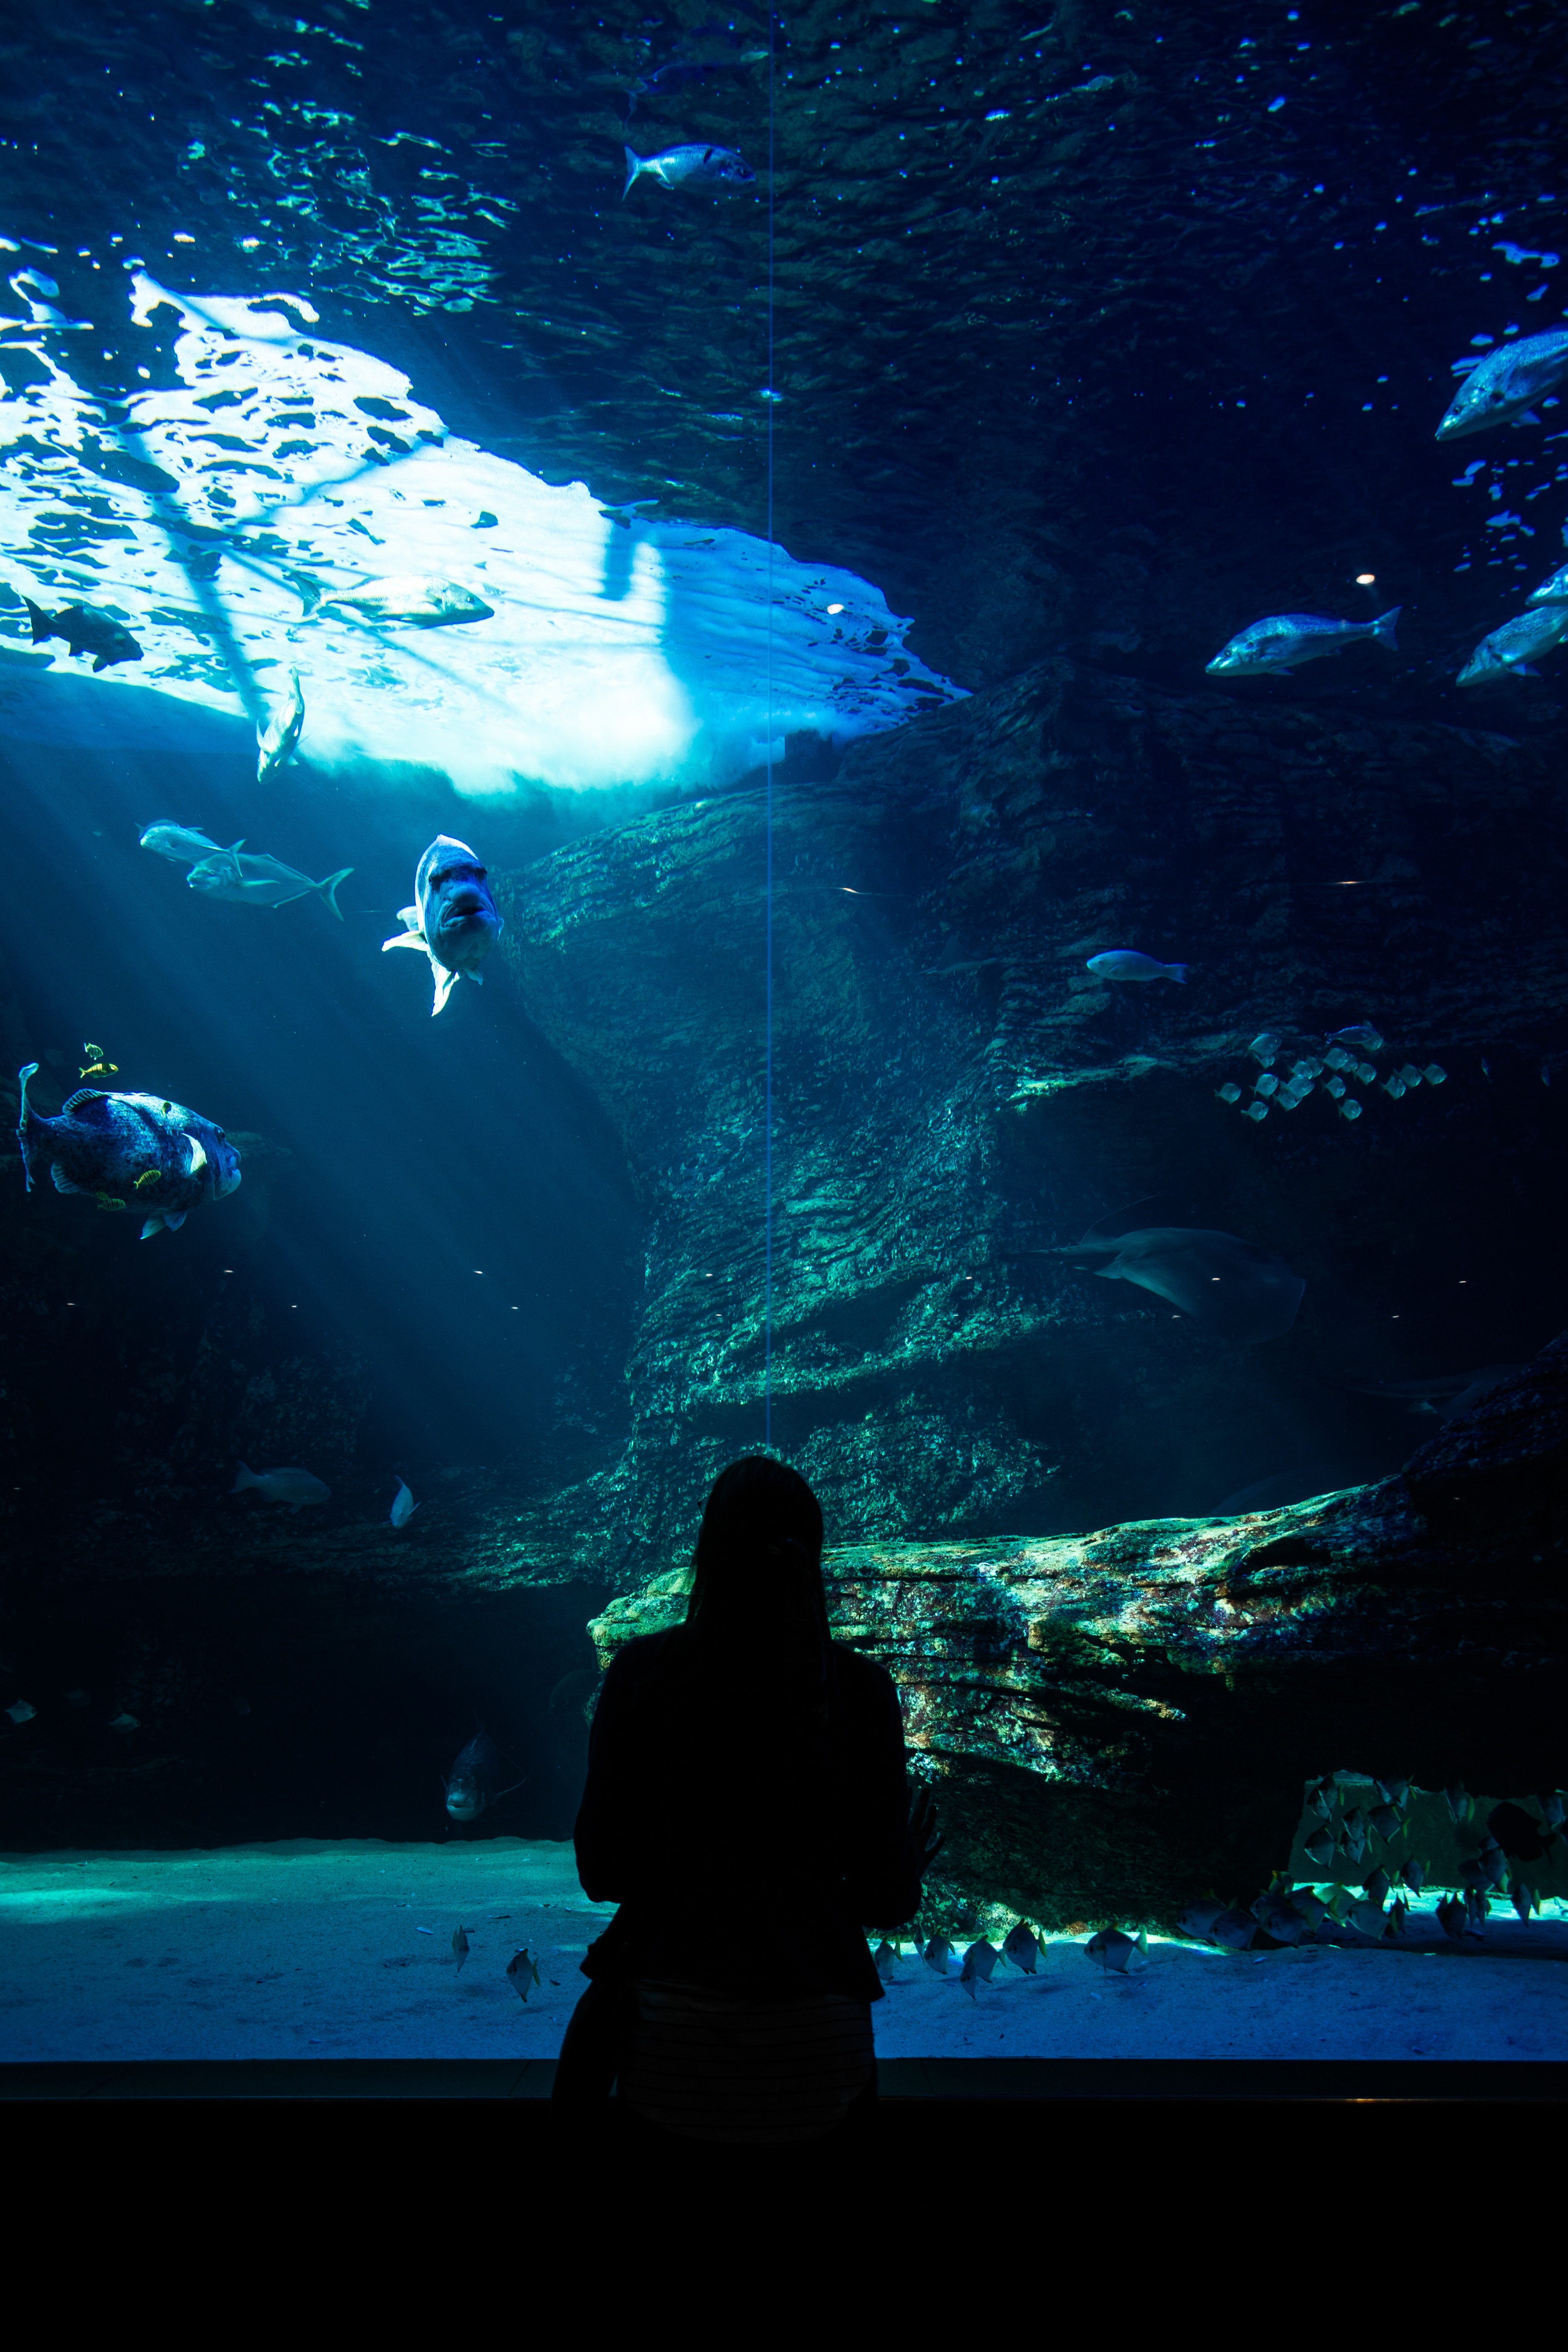 underwater world, silhouette, fishes, aquarium, dark 2160p